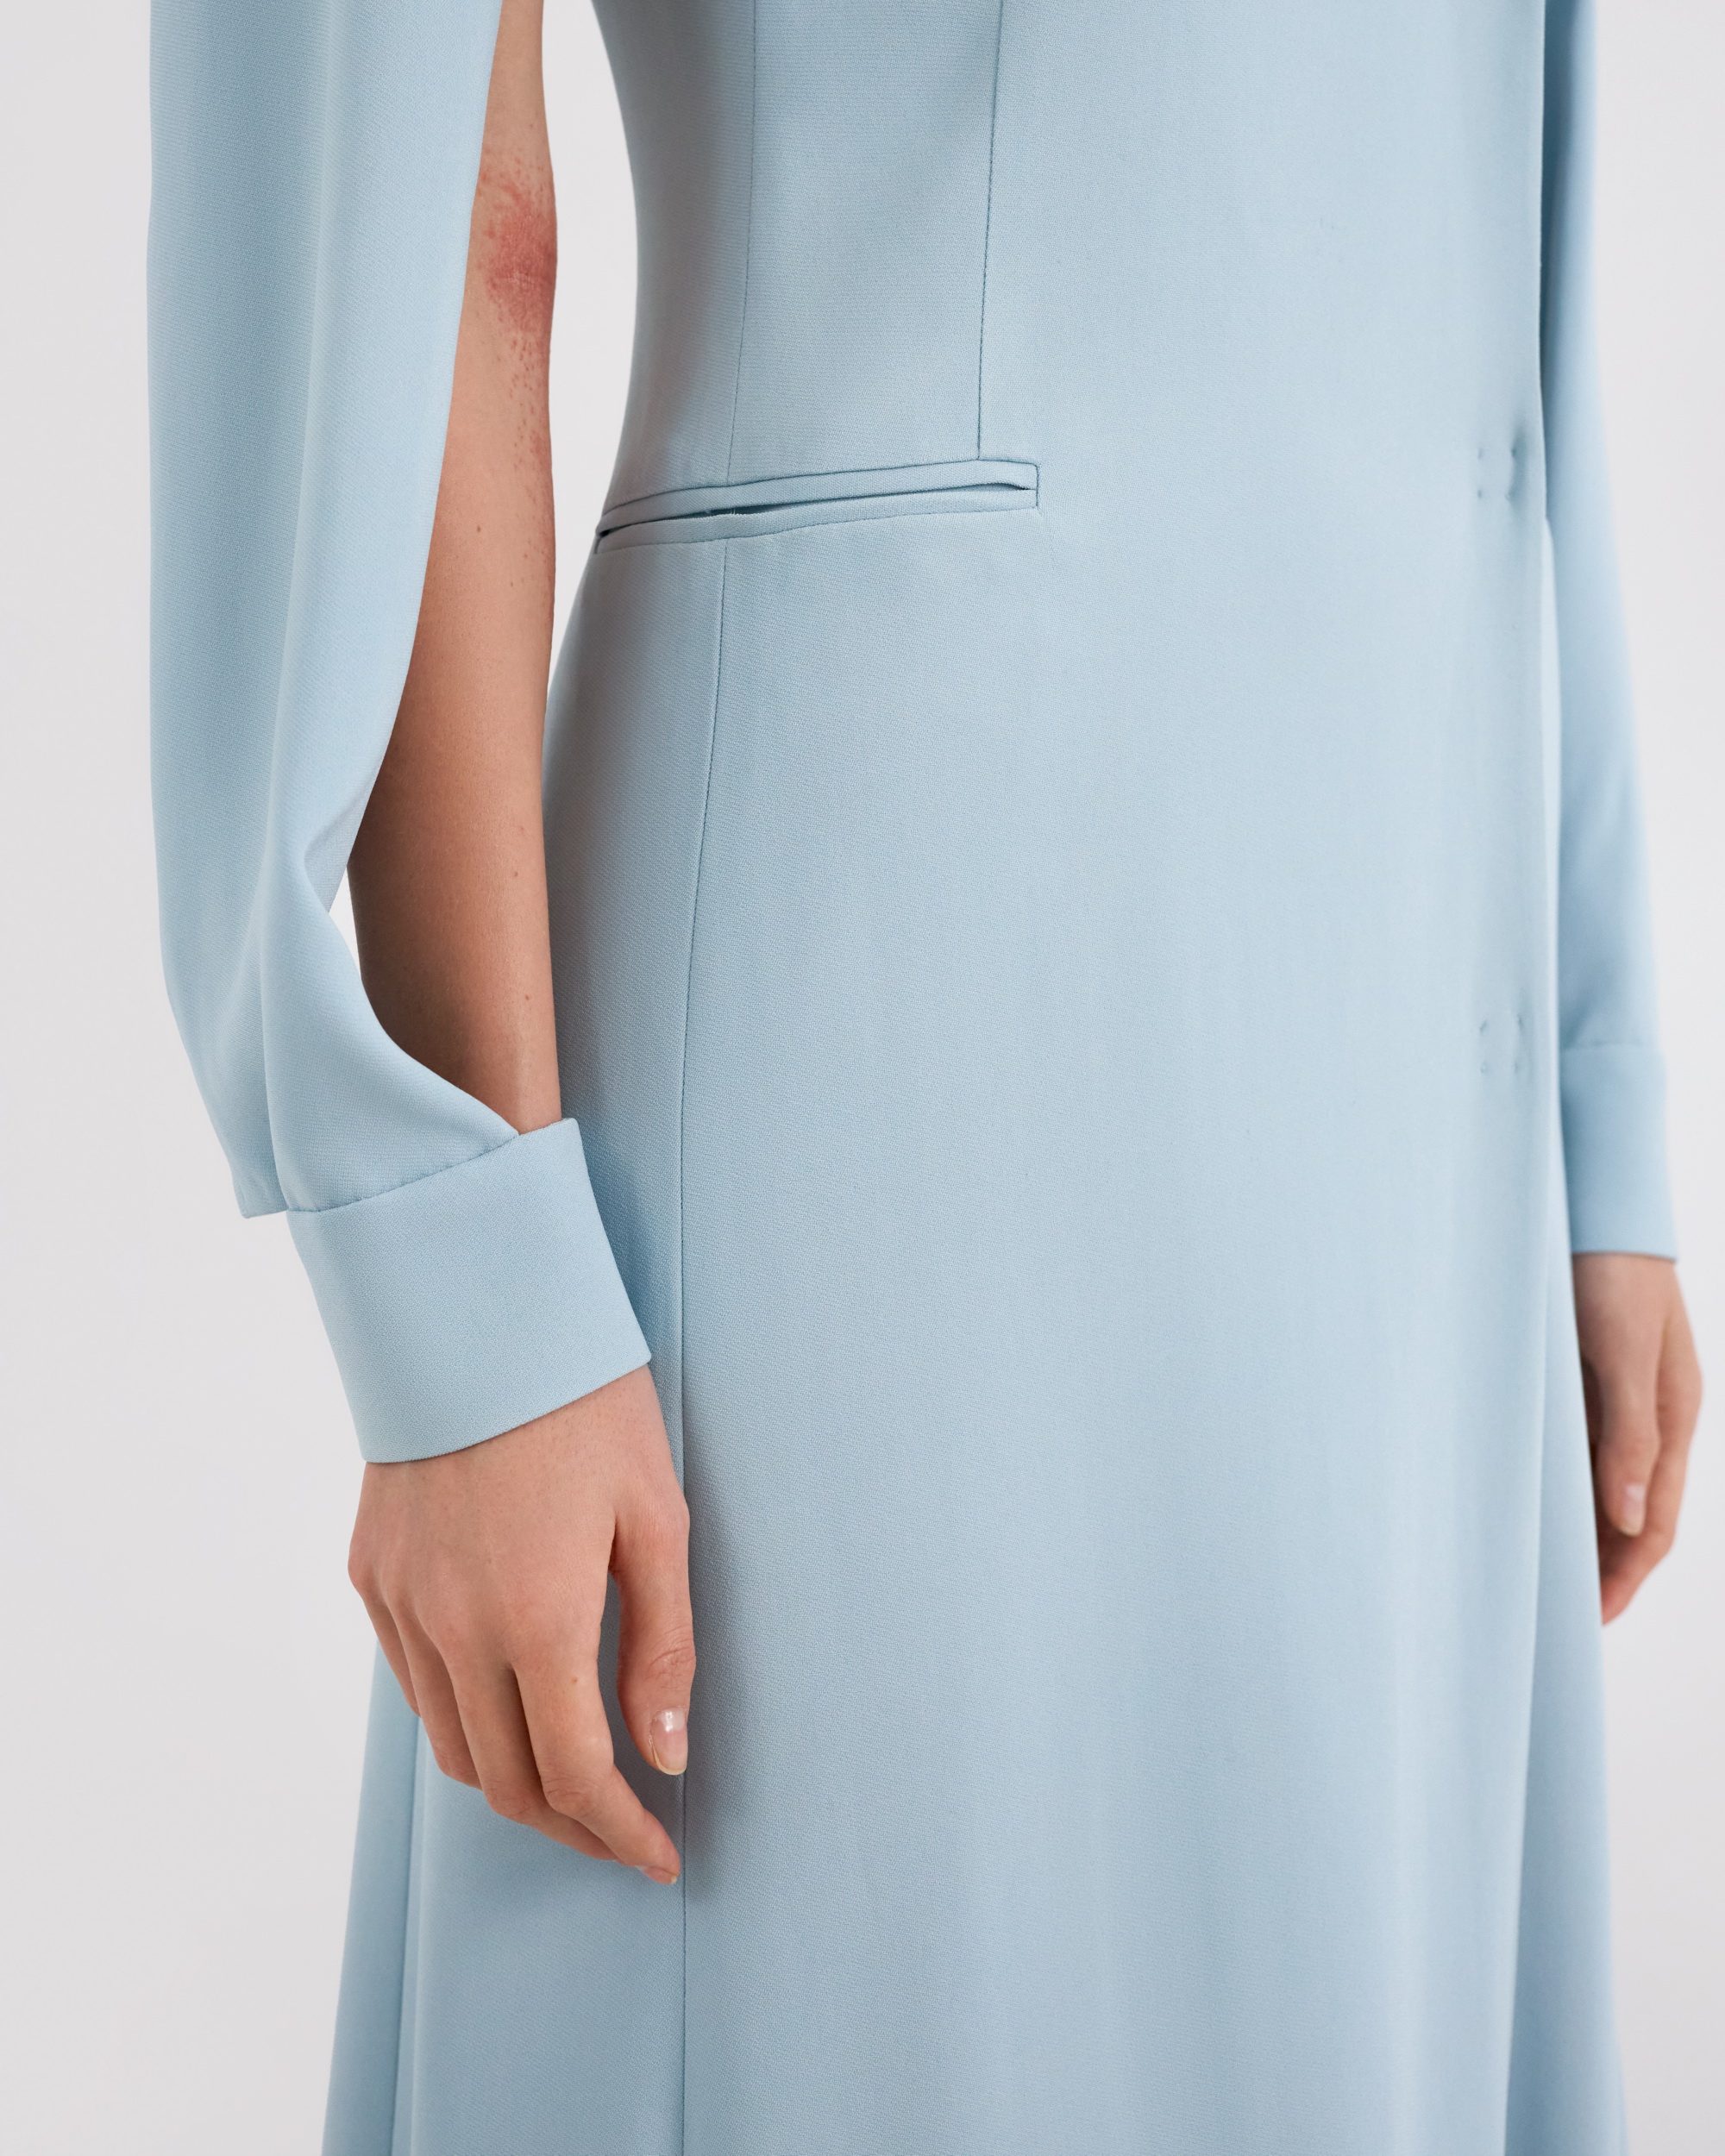 Dress, pattern №925 buy online